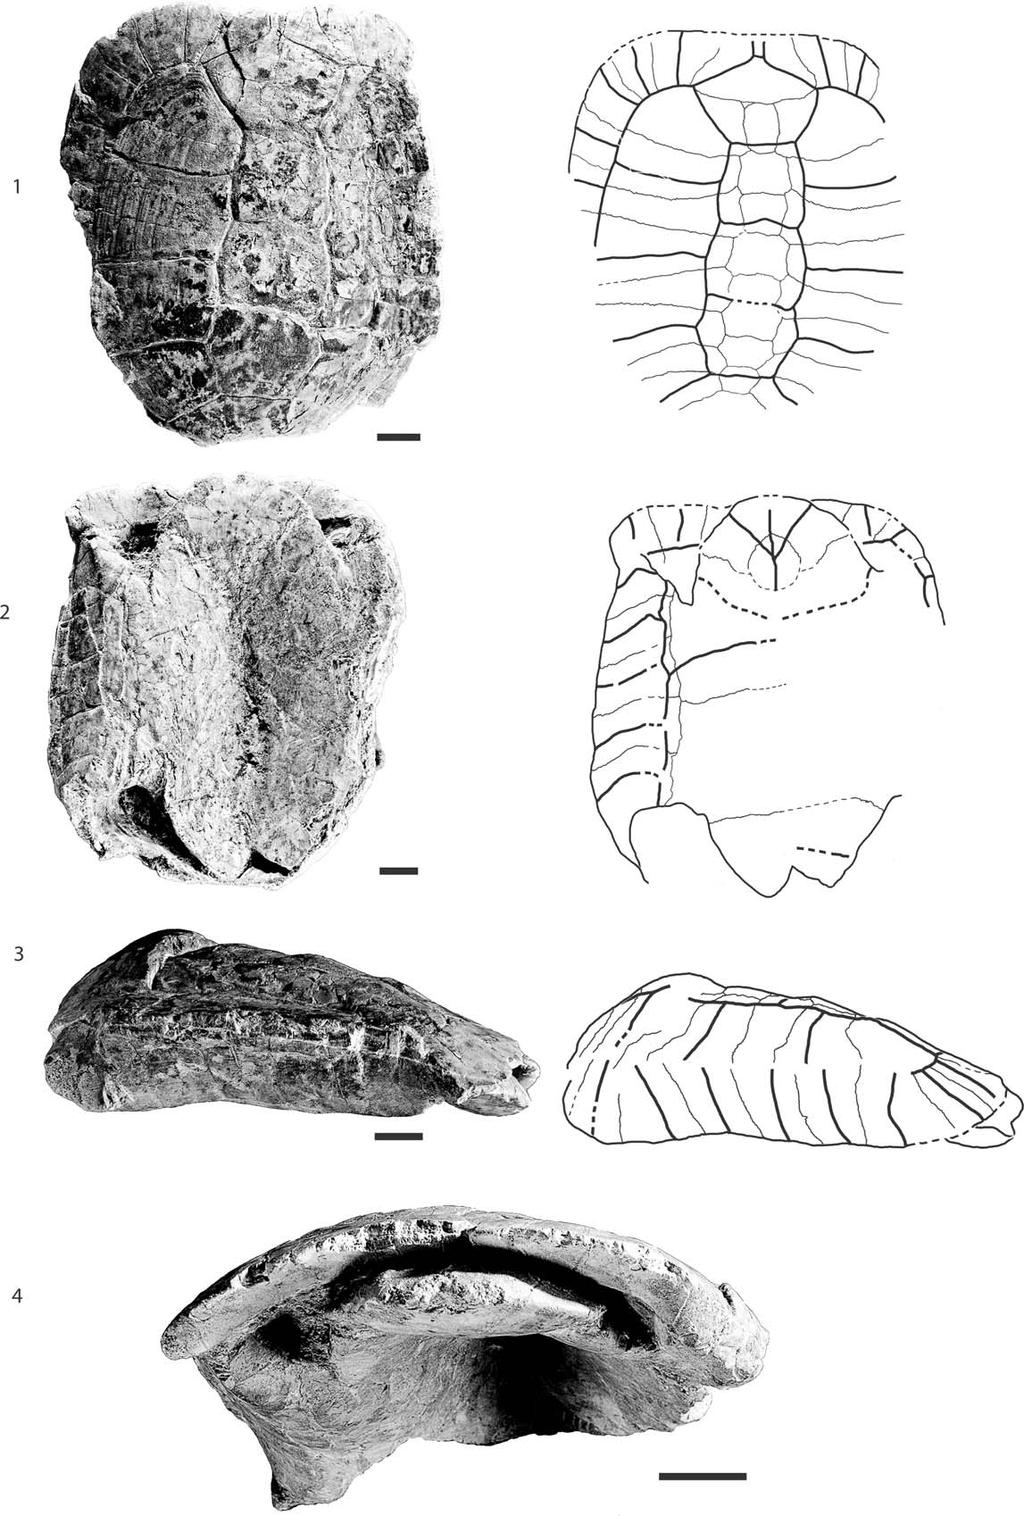 956 JOURNAL OF PALEONTOLOGY, V. 88, NO. 5, 2014 FIGURE 6 SMNS 4450, Testudo antiqua, middle Miocene of Hohenhöwen, Germany.